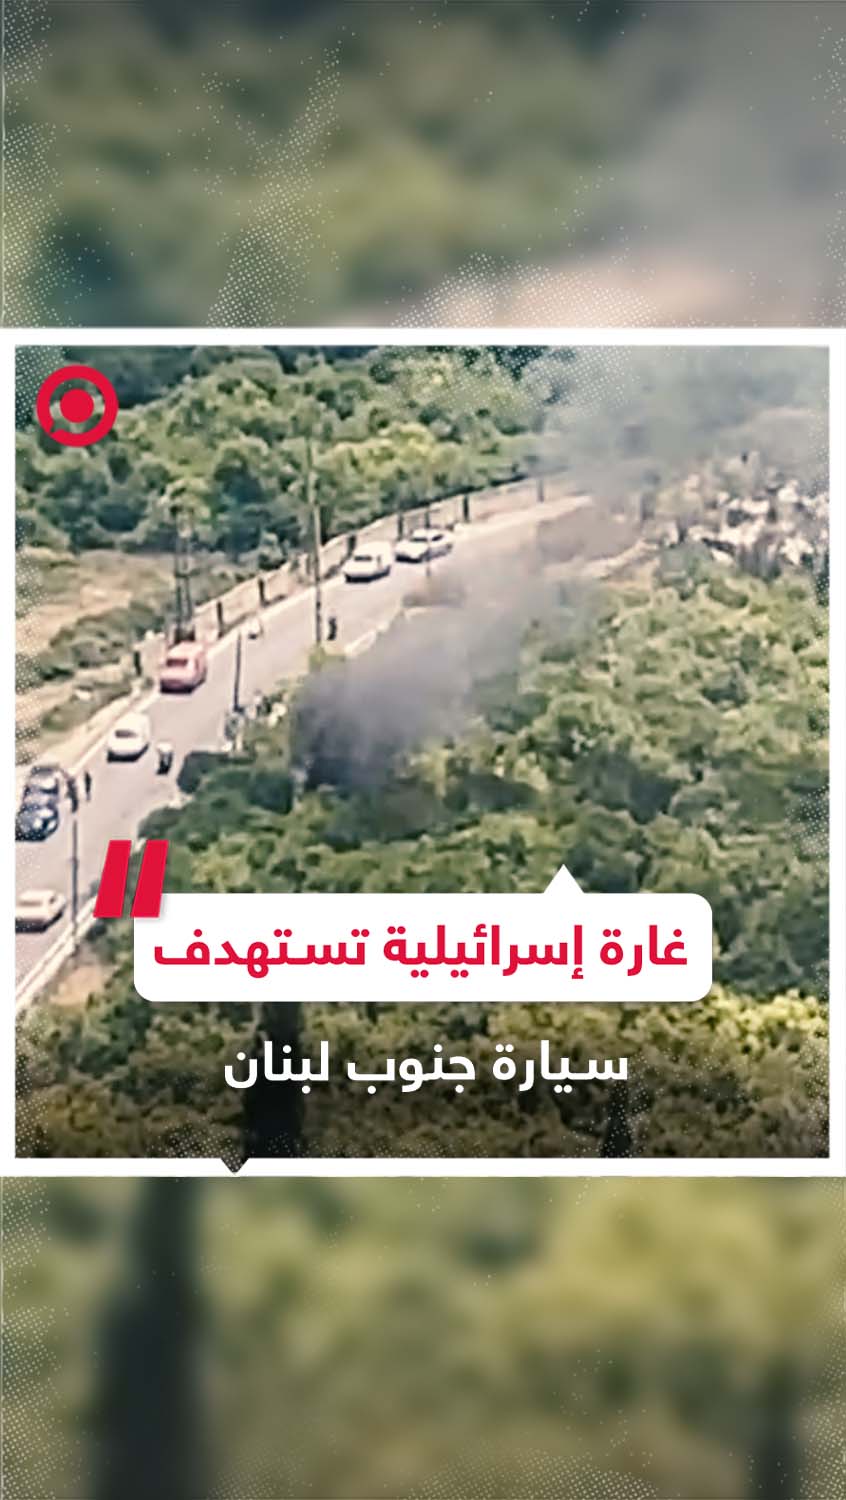 غارة إسرائيلية تستهدف سيارة في عمق الجنوب اللبناني